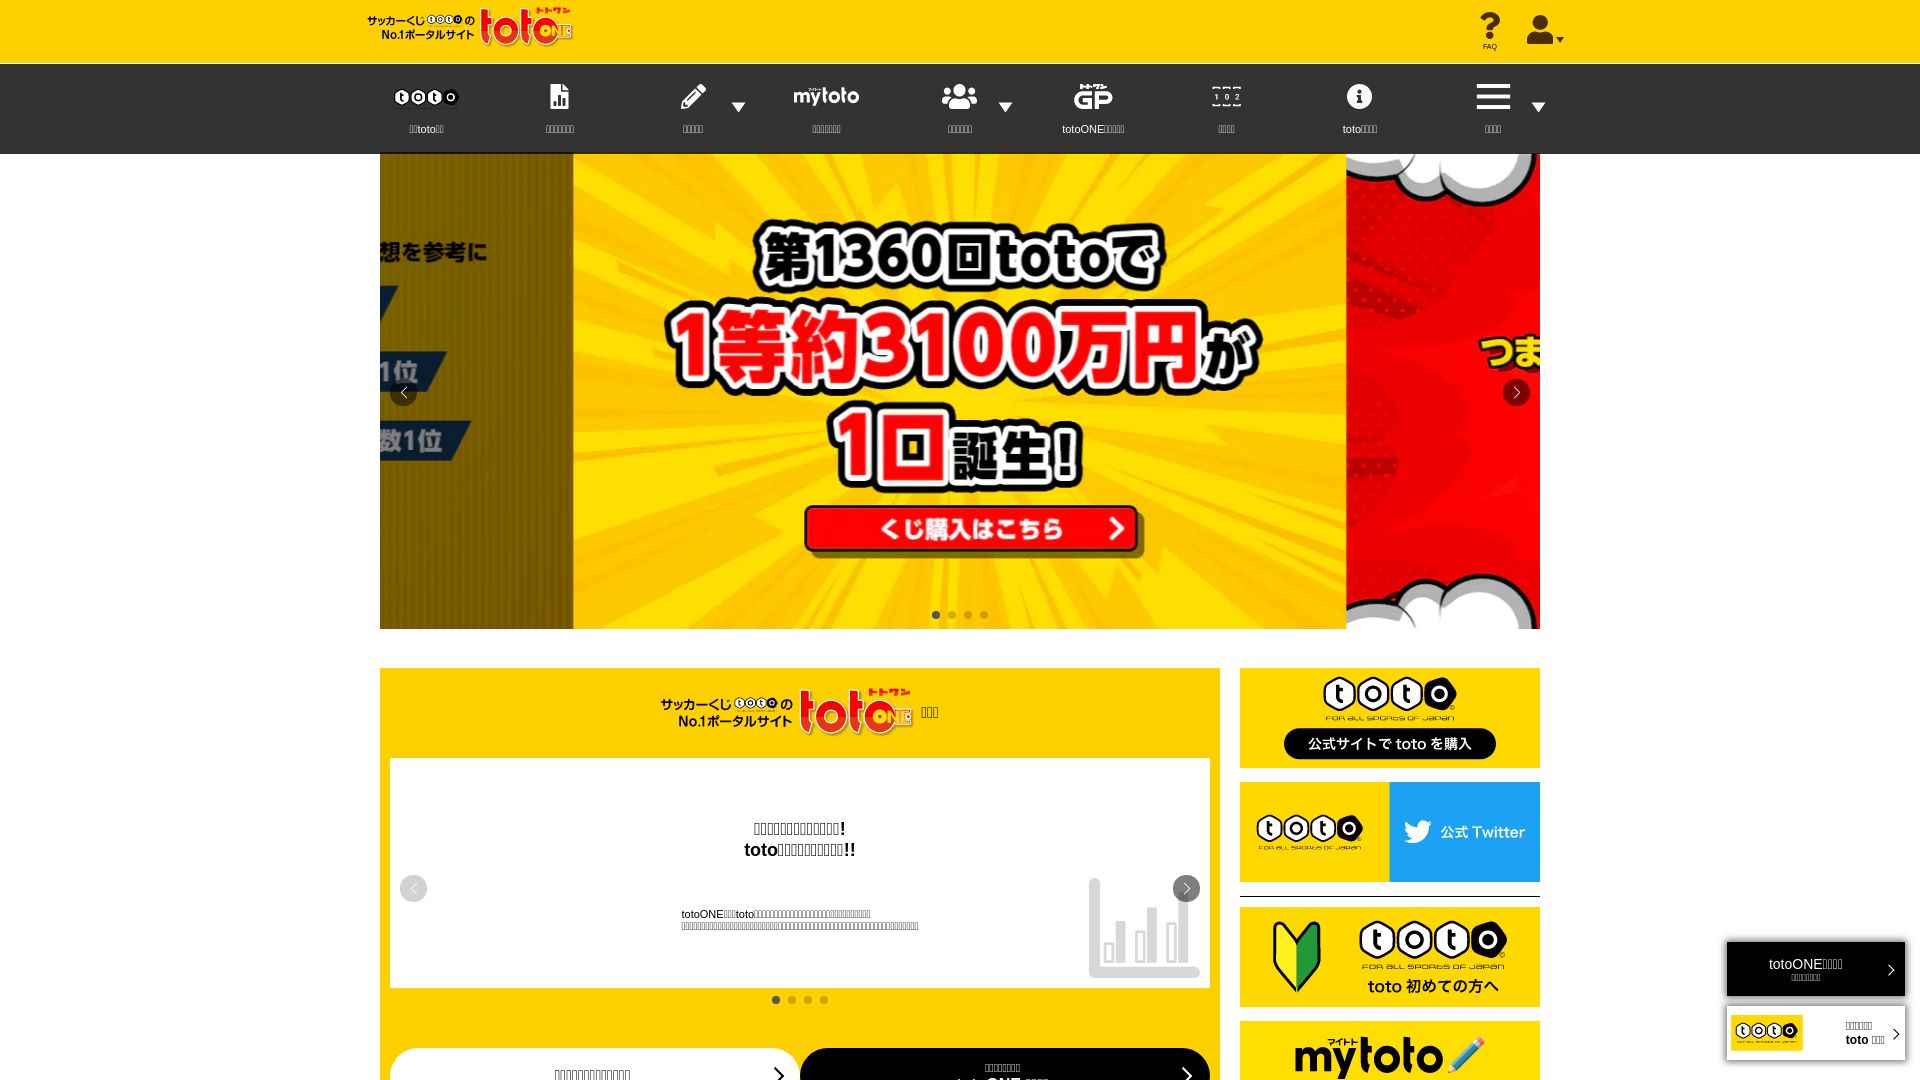 网站状态 totoone.jp 是  在线的